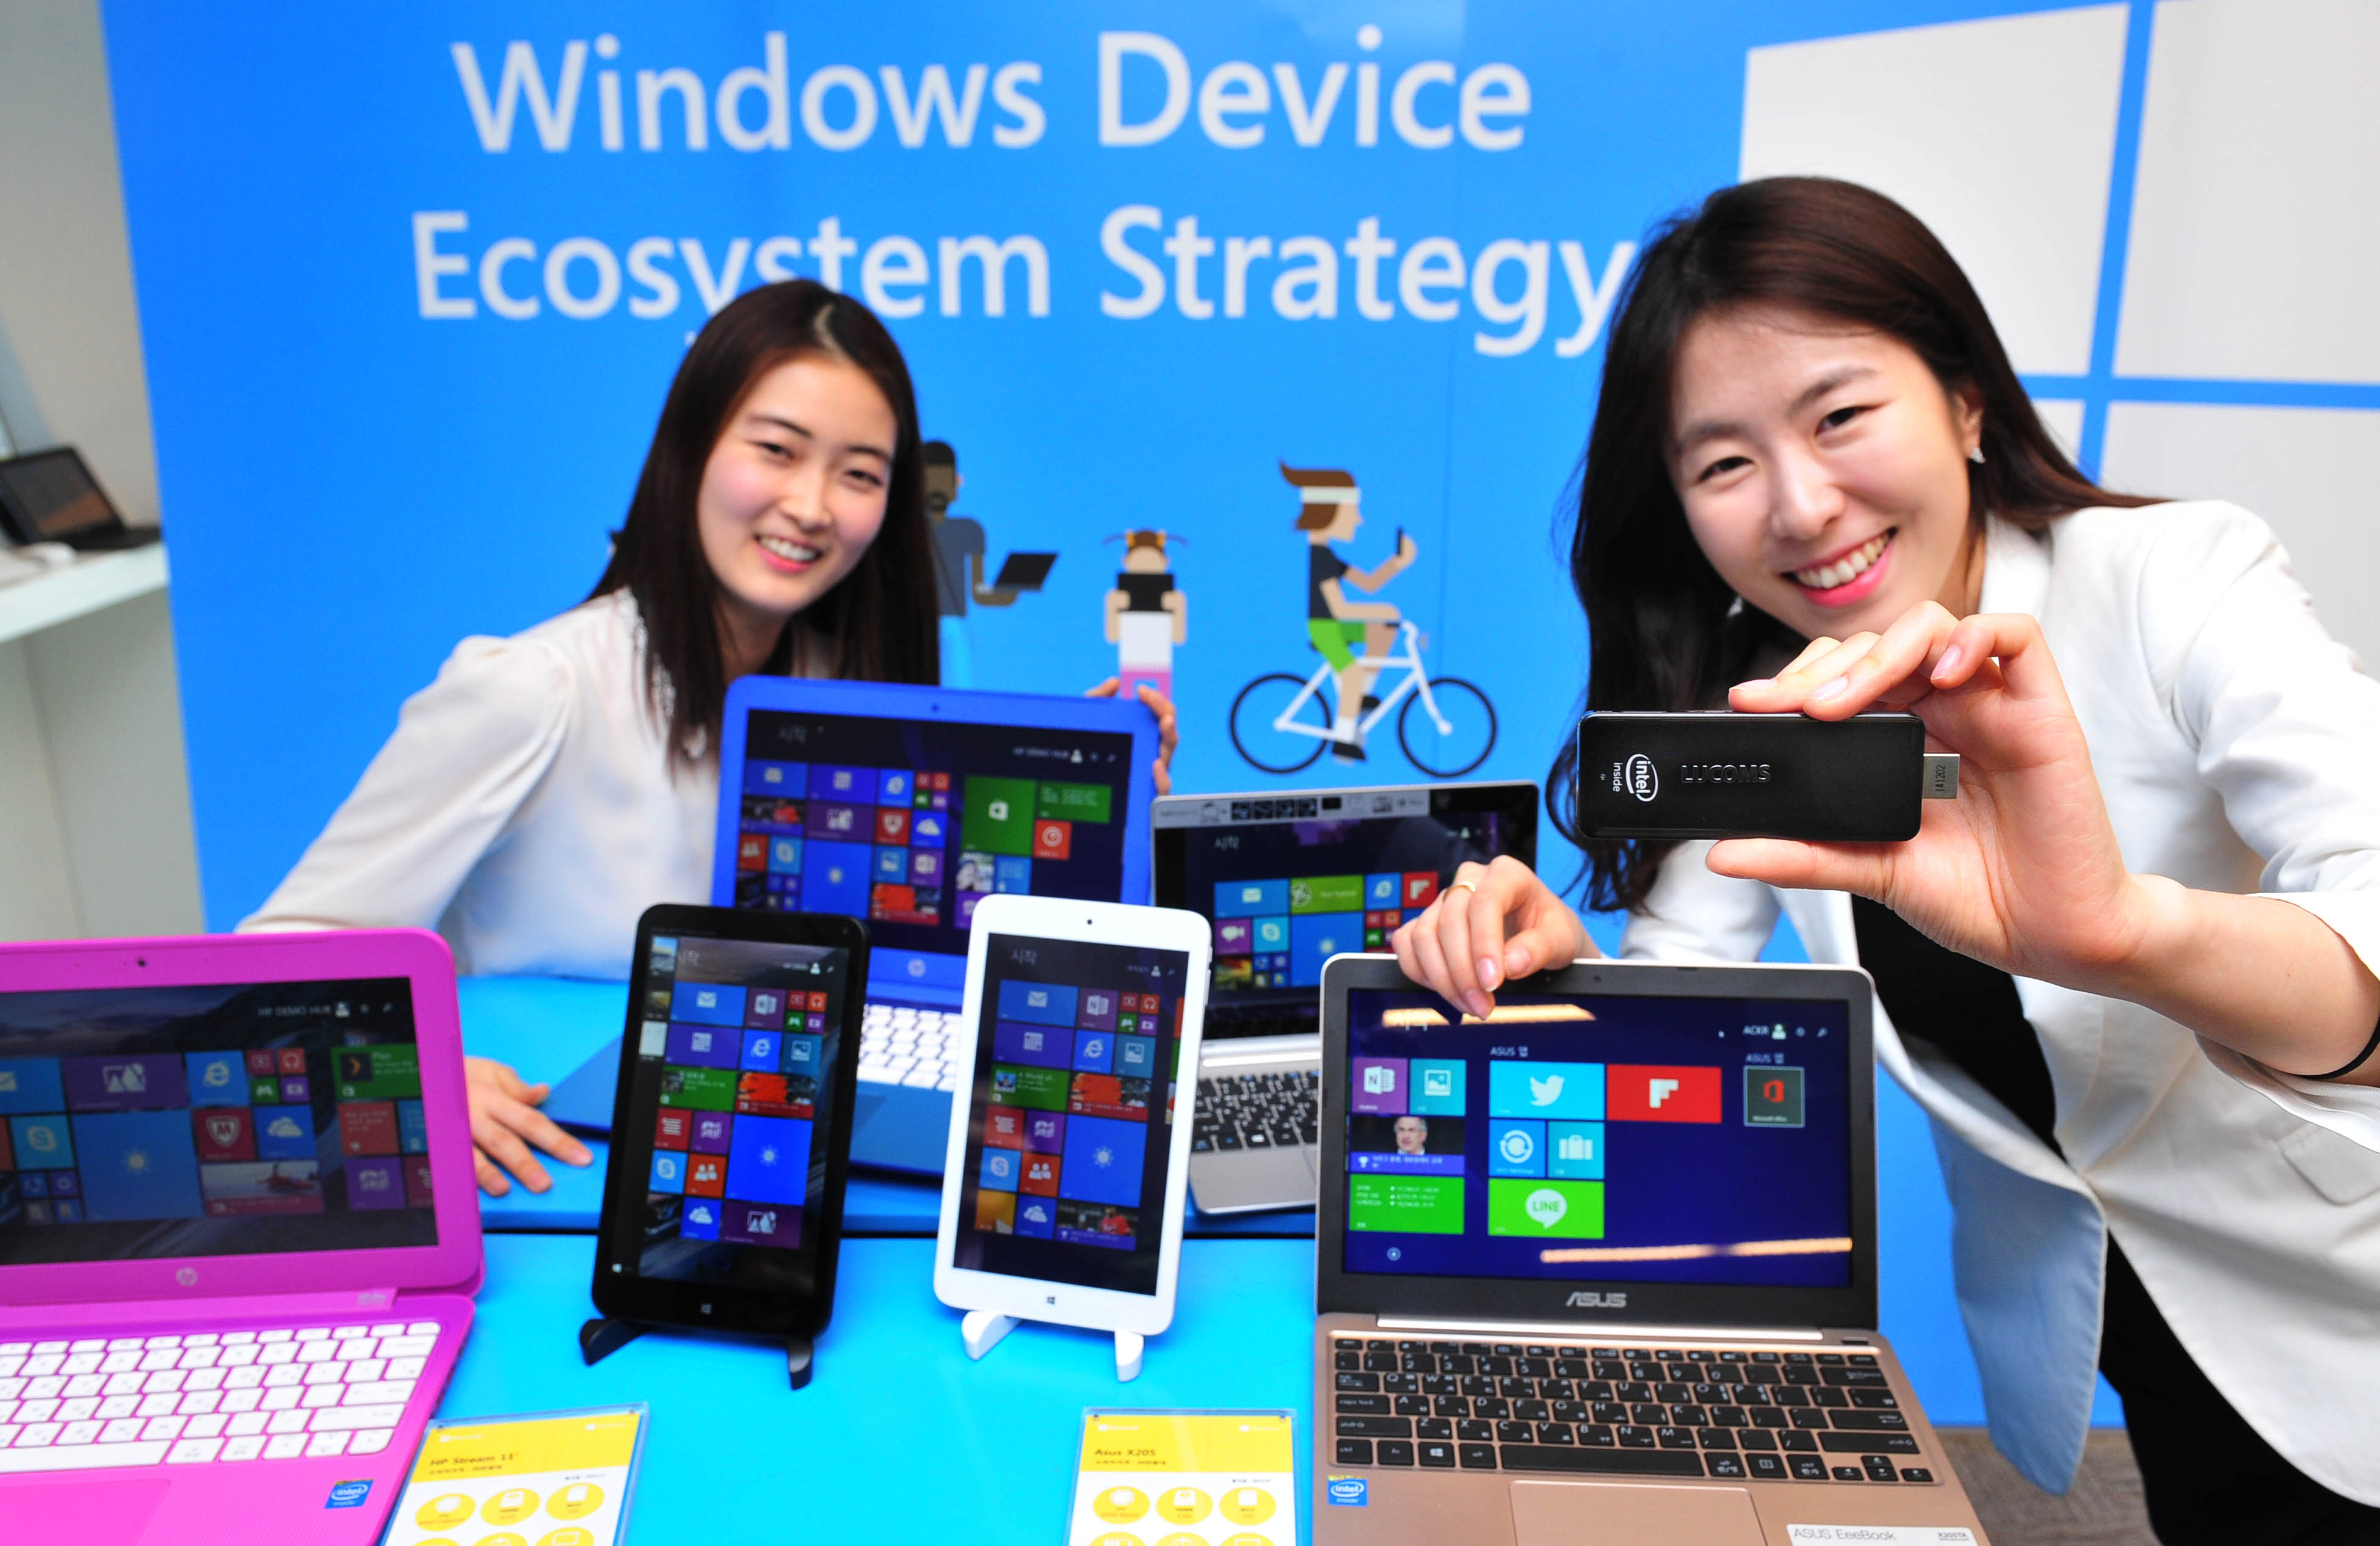 한국마이크로소프트 윈도우 디바이스 확산 전략 간담회 데모존에서 다양한 윈도우 디바이스 라인업을 소개하고 있다